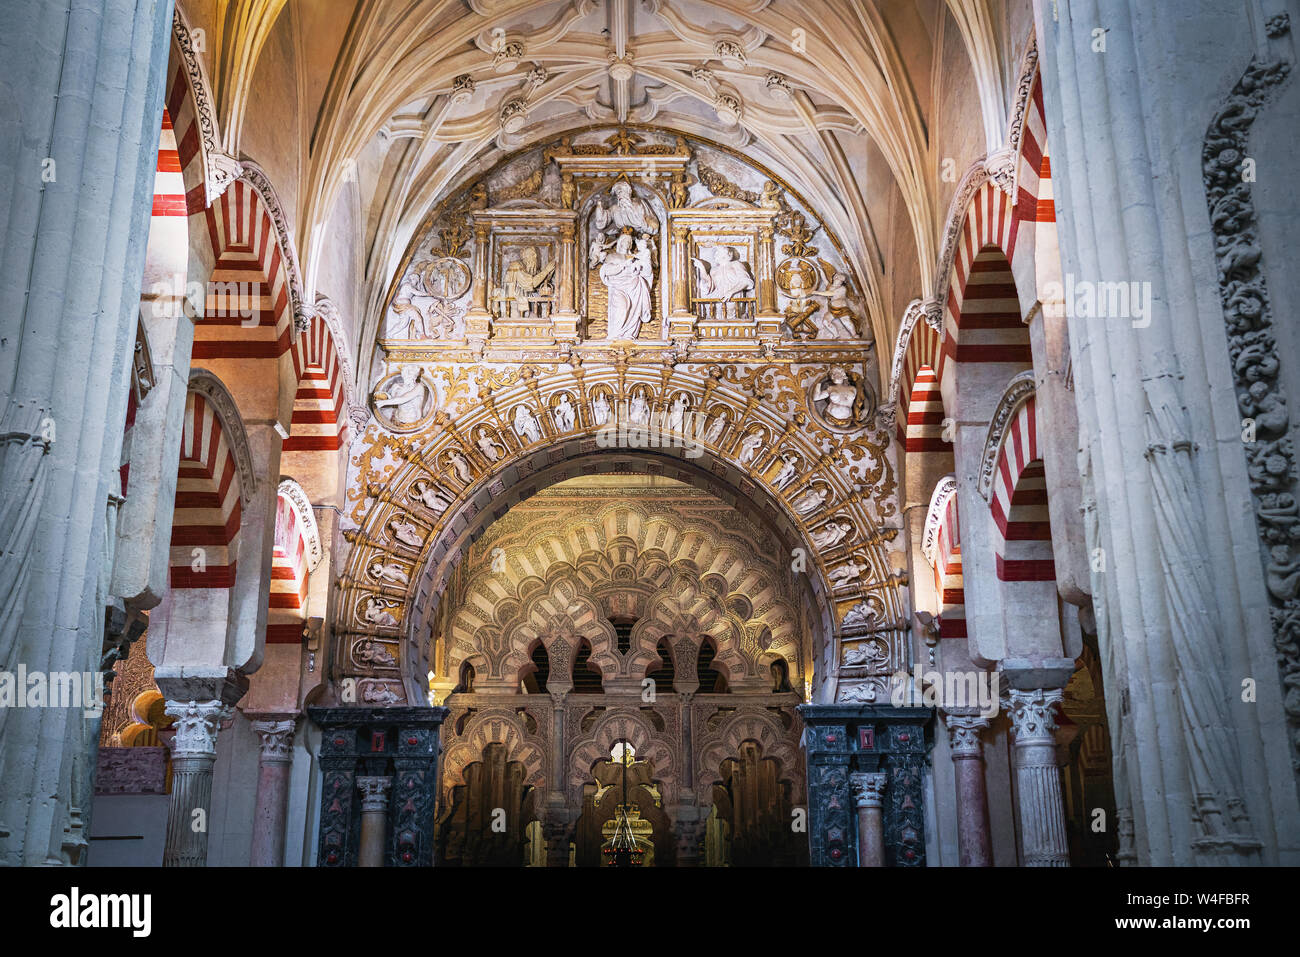 Innere Ausschmückung von Córdoba Moschee Kathedrale - Cordoba, Andalusien, Spanien Stockfoto